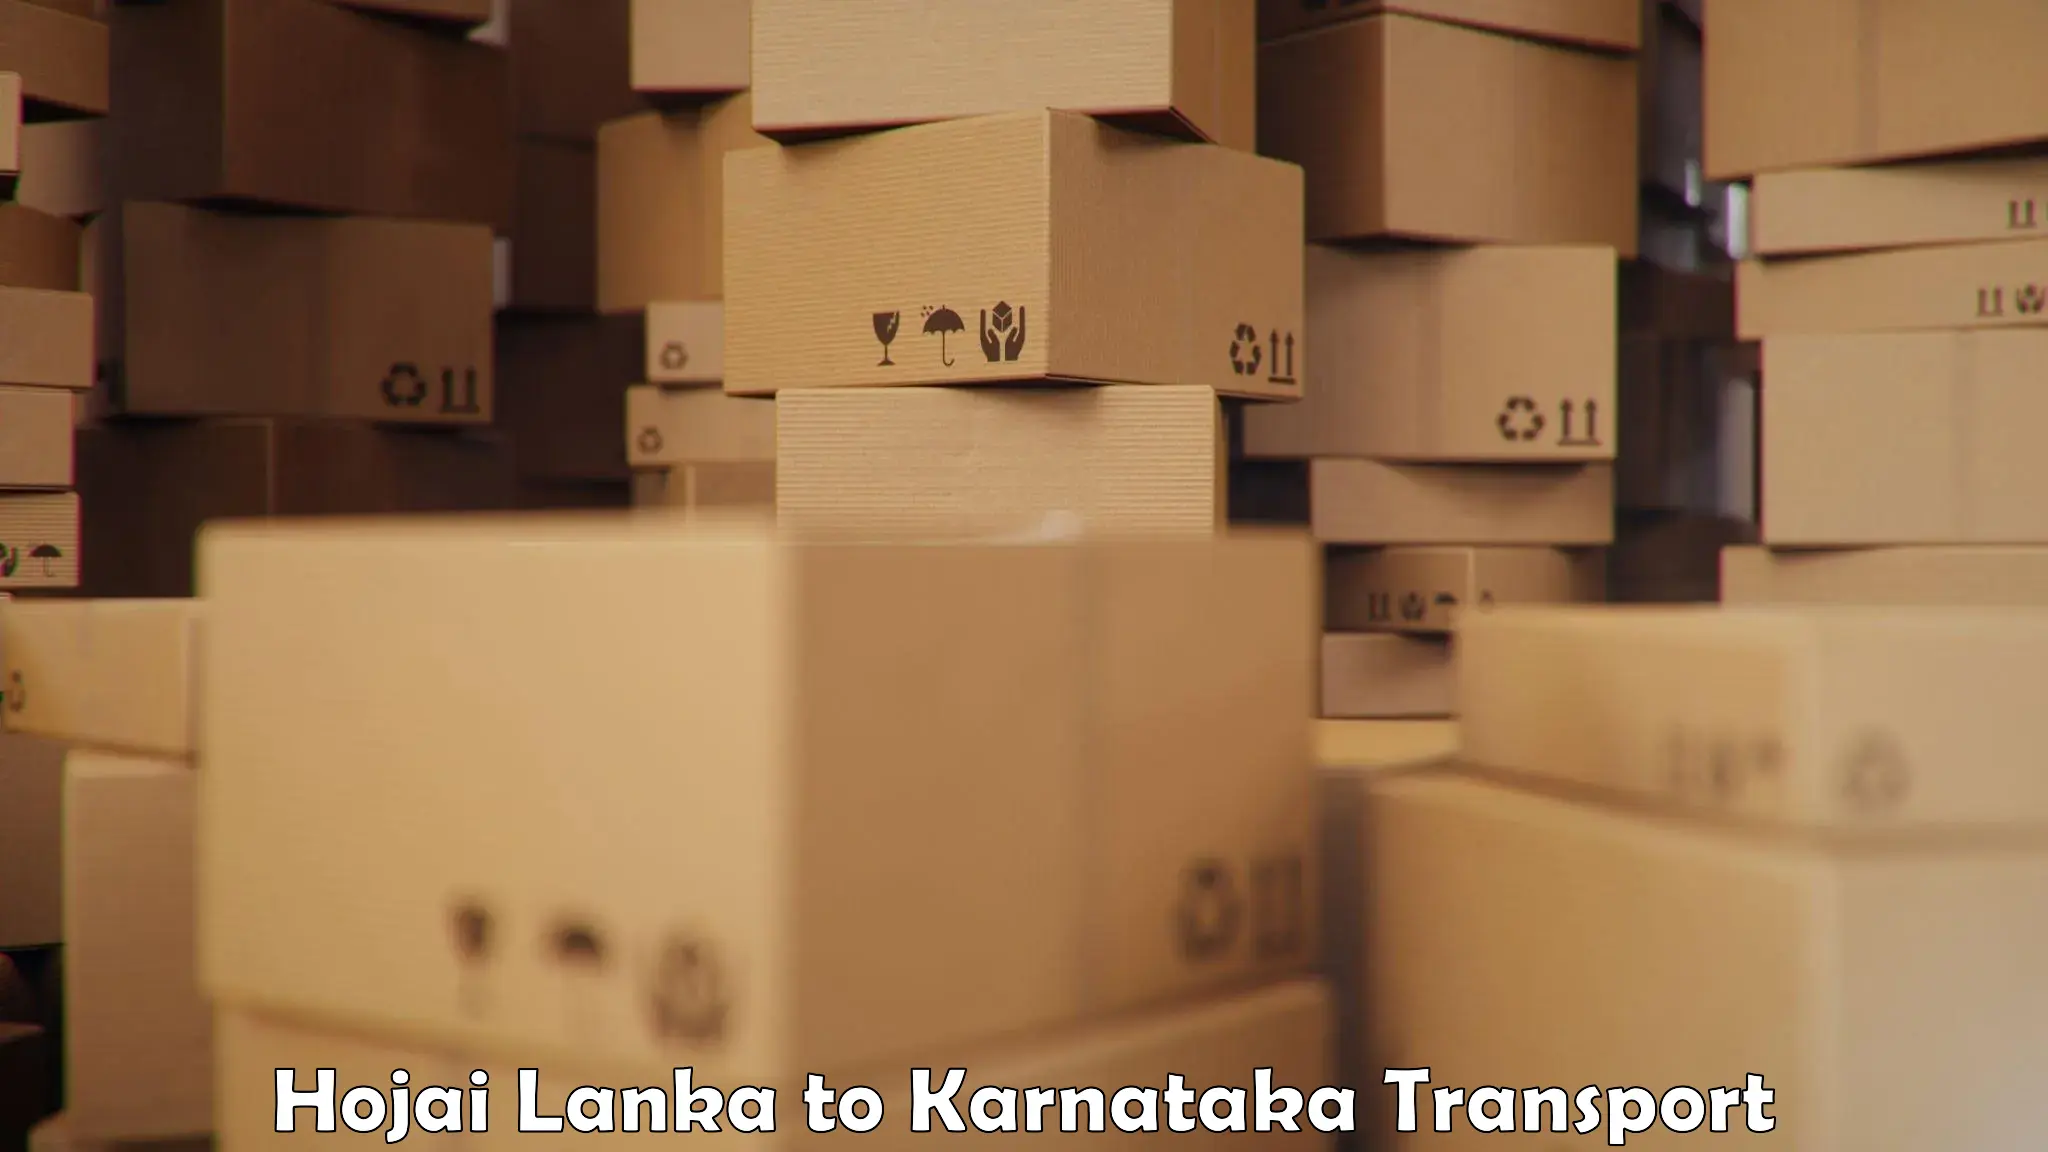 Road transport online services Hojai Lanka to Kolar